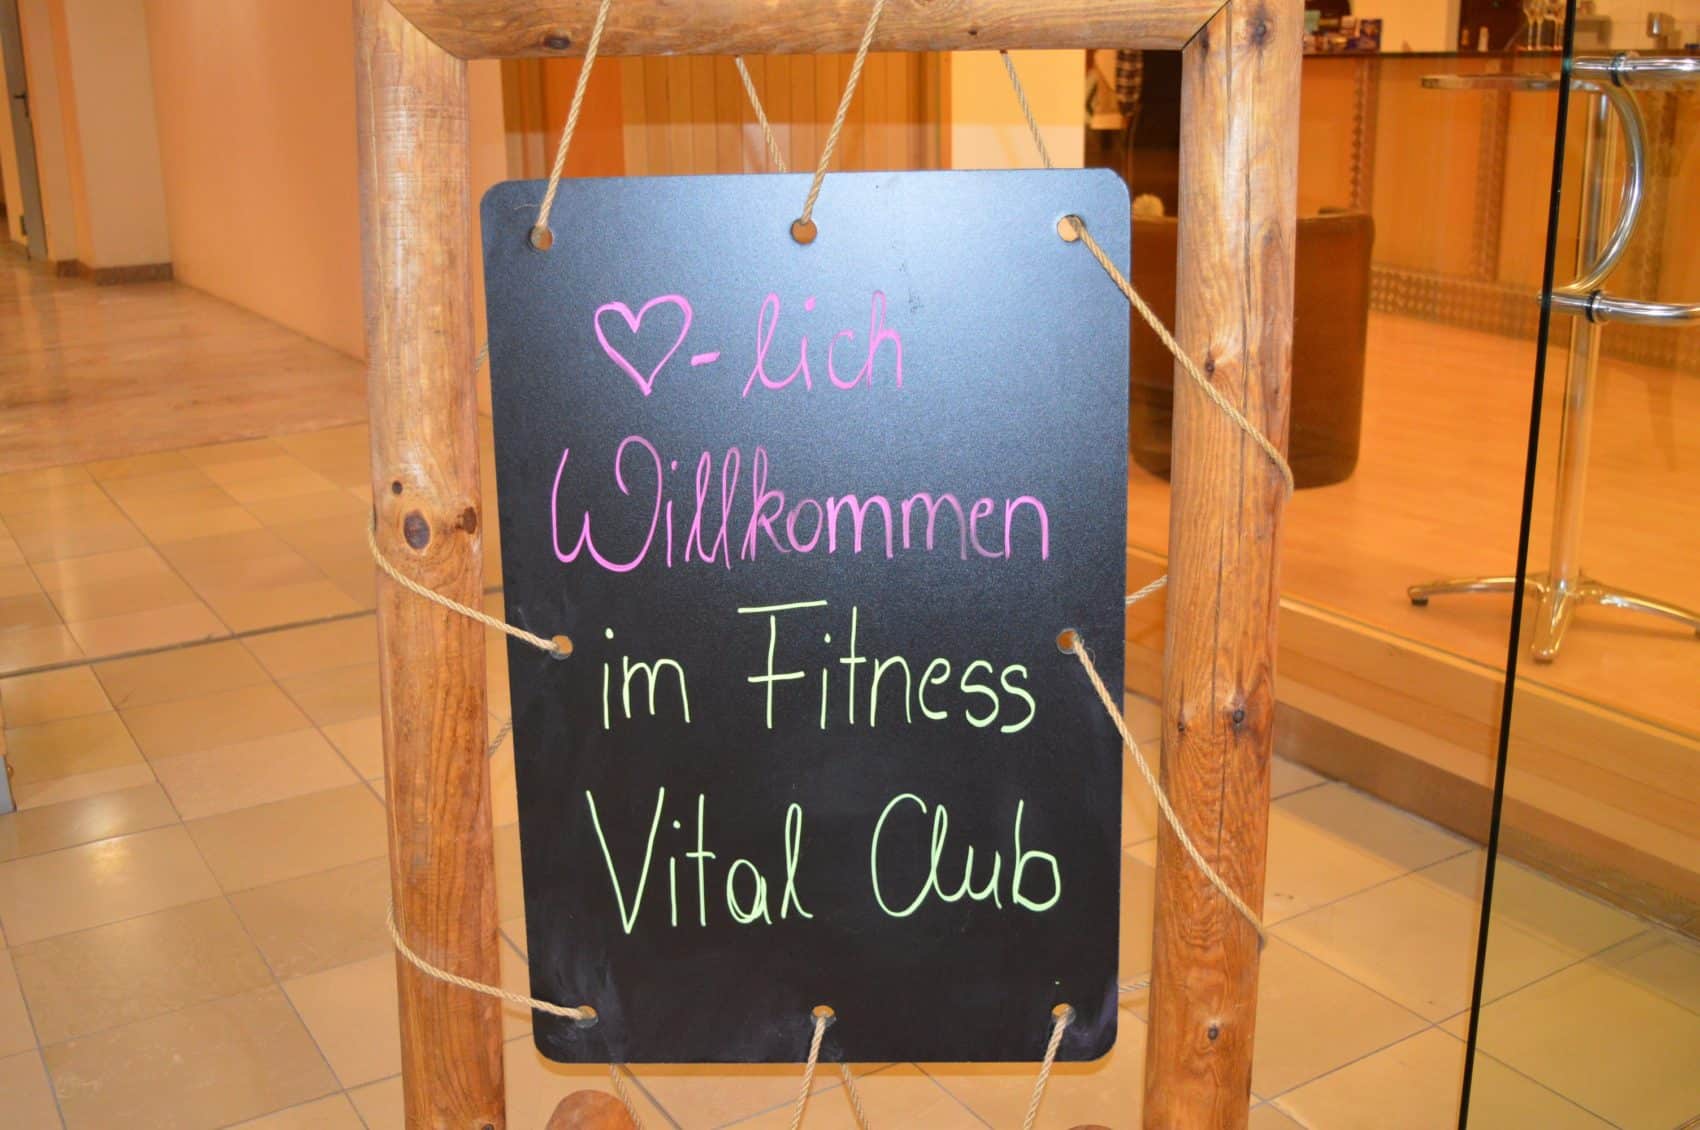 Neueröffnung! Der Fitness Vital Club freut sich auf euer kommen.